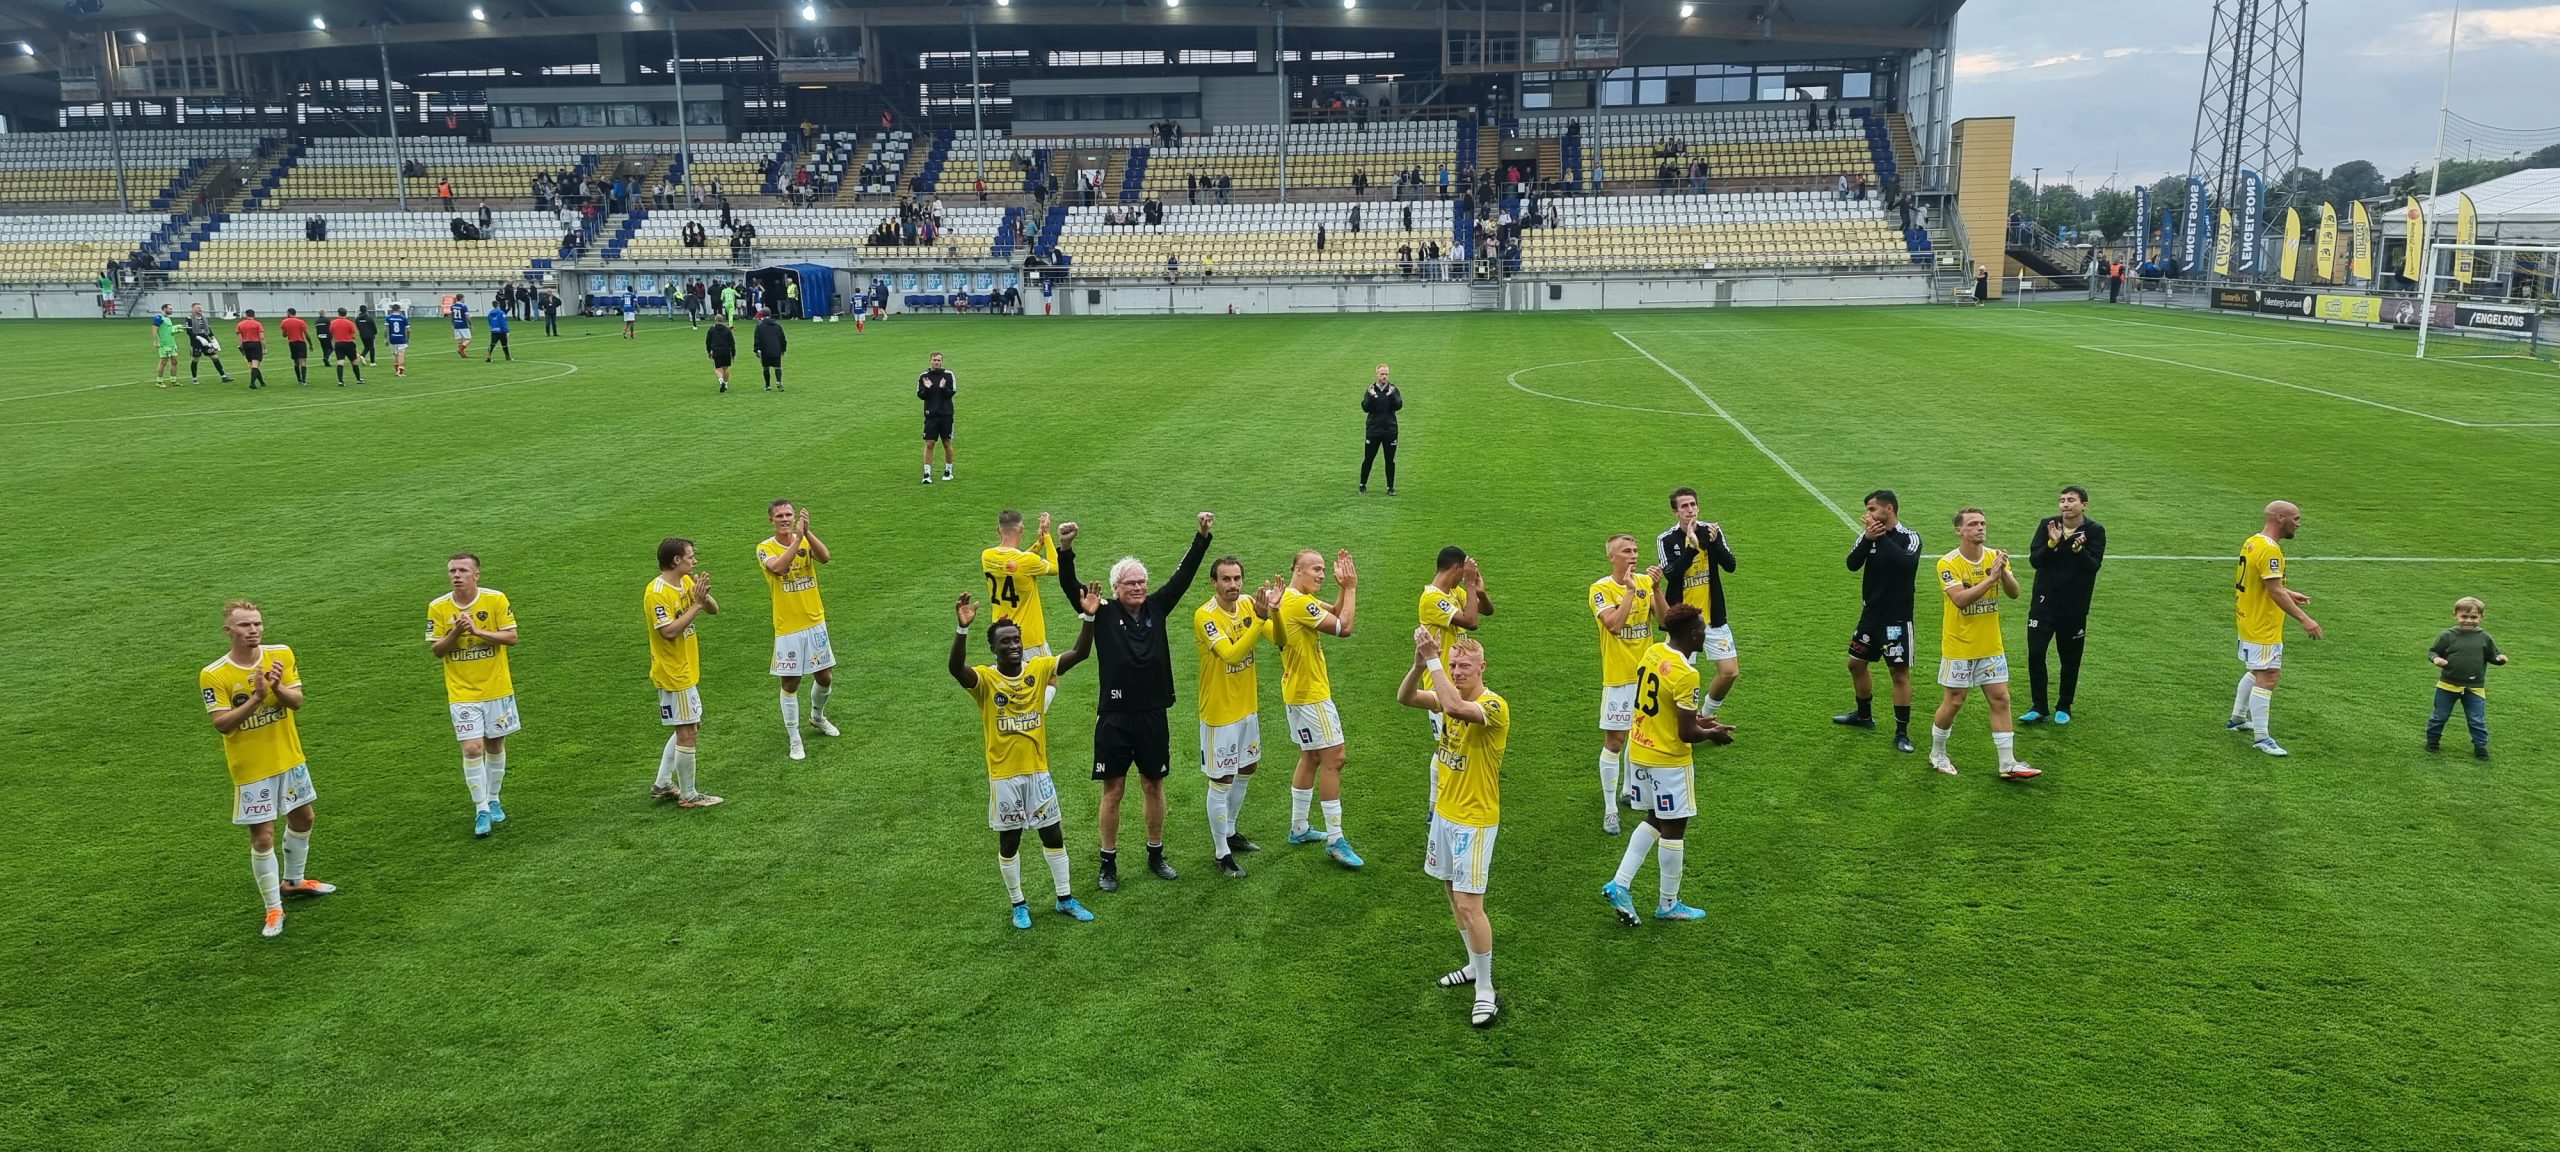 3-0-seger över Åtvidabergs FF: ”Det var en bra omgång för oss”